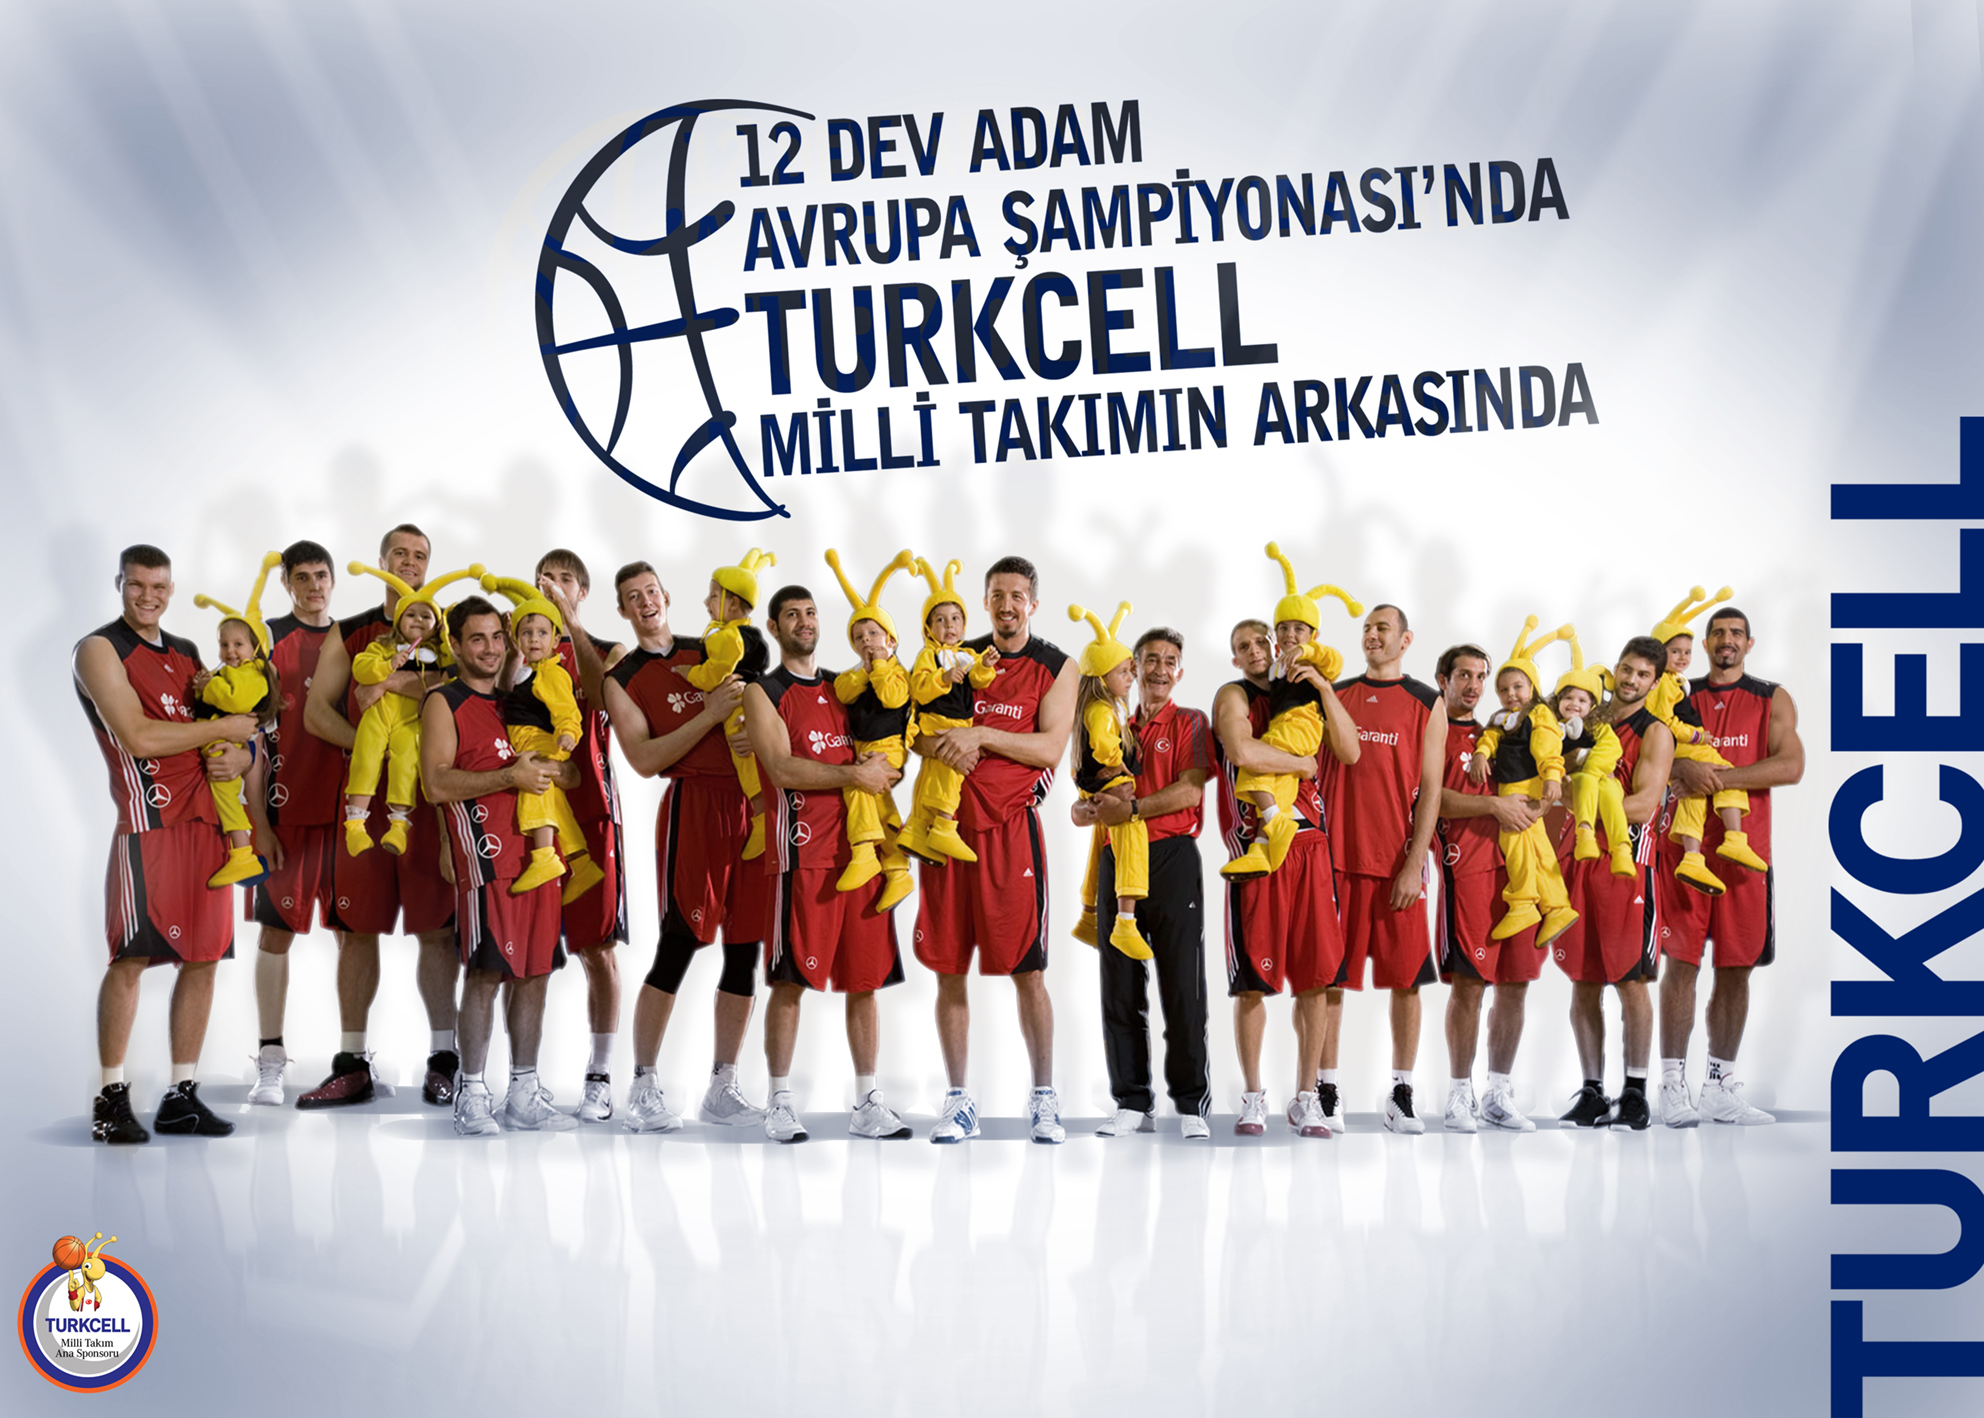 Turkcell Avrupa Şampiyonasında Milli Takımı destekliyor